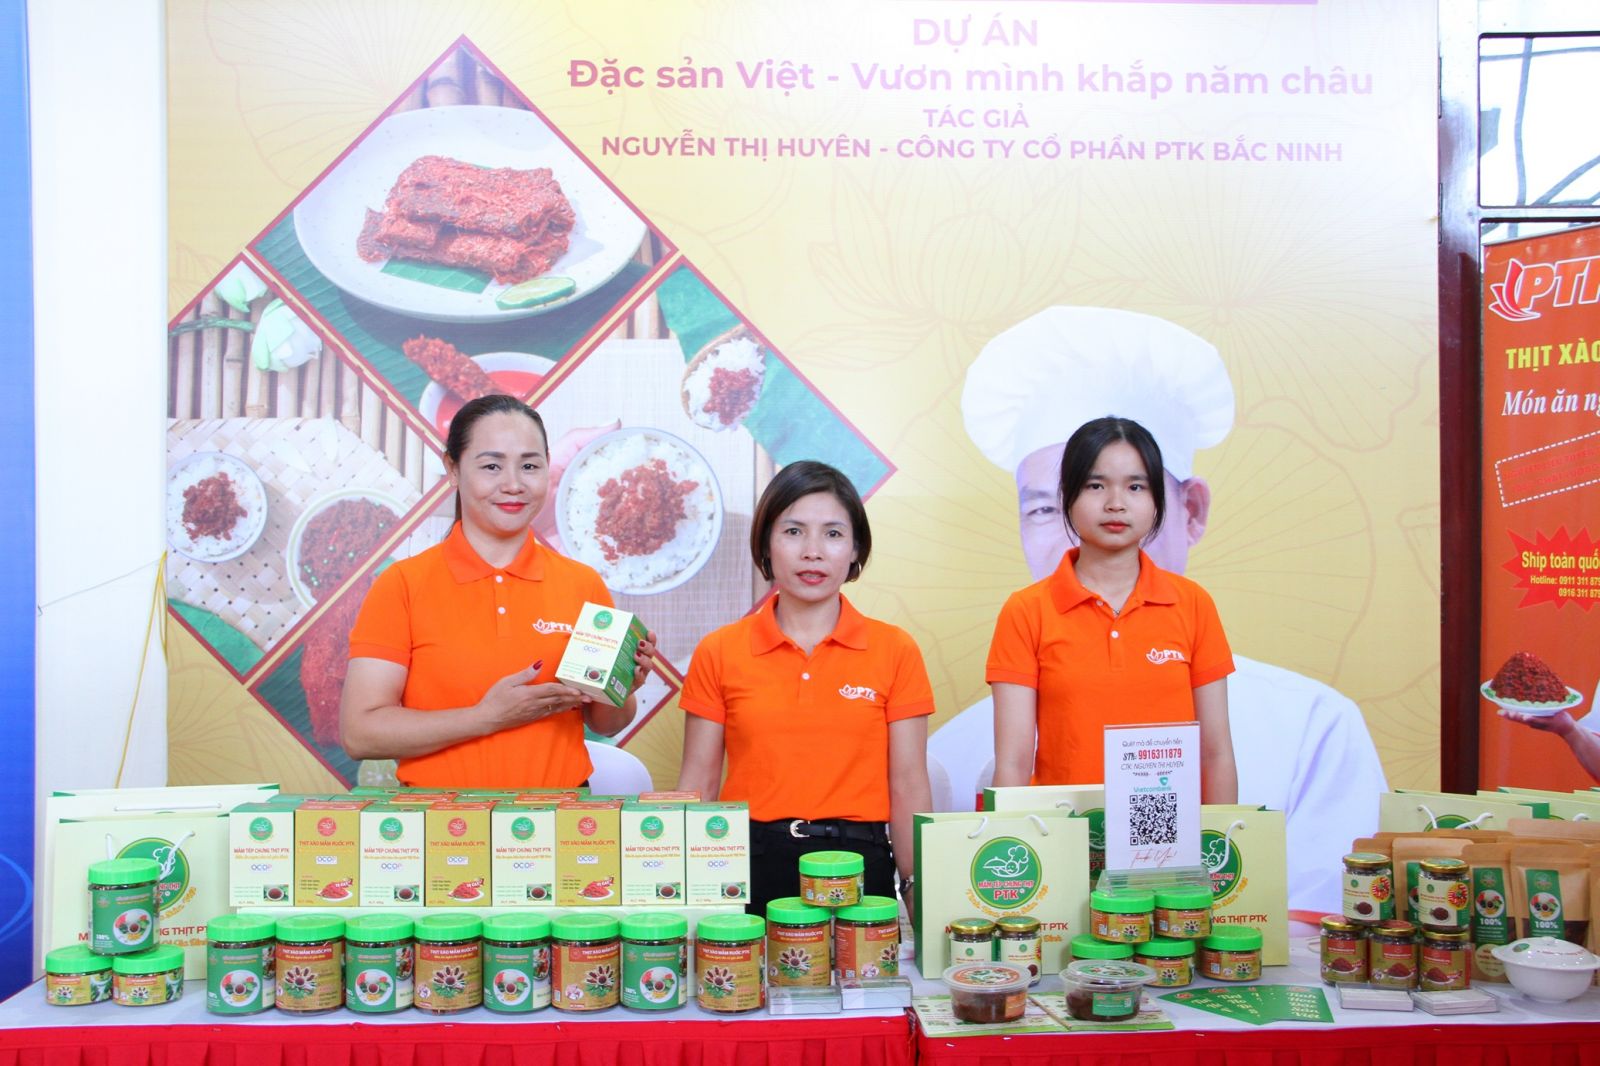 Ý tưởng công trình khởi nghiệp Mắm tép chưng thịt PTK với chủ đề “Tinh hoa đặc sản Việt”